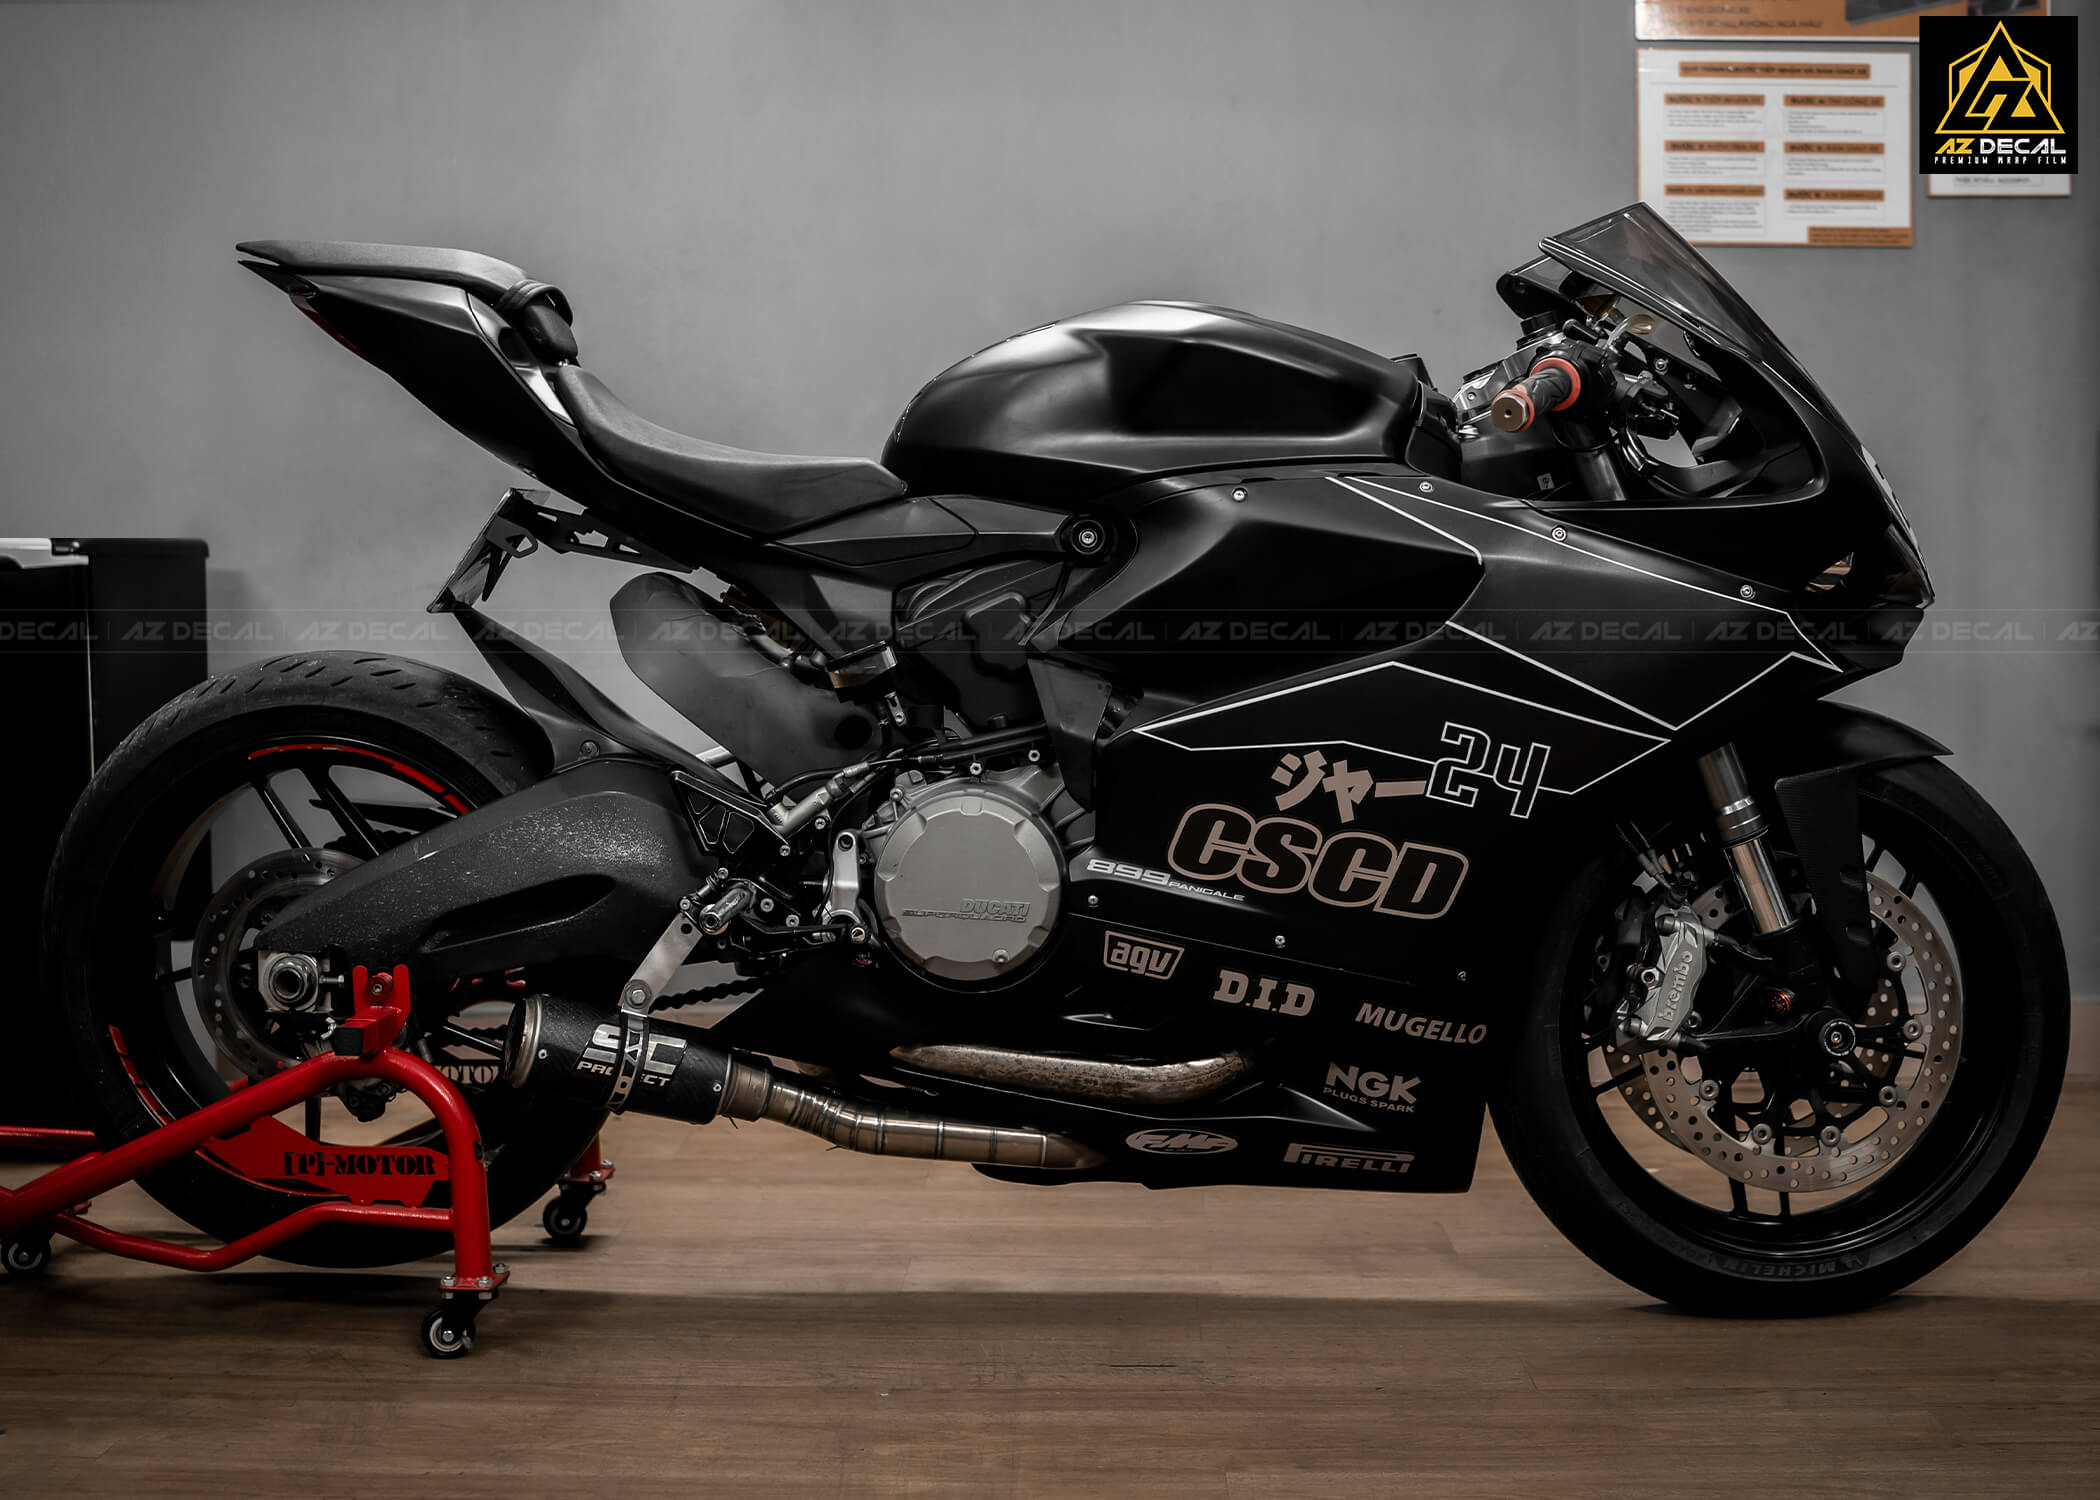 Tem trùm xe Ducati Panigale 899 thiết kế theo yêu cầu